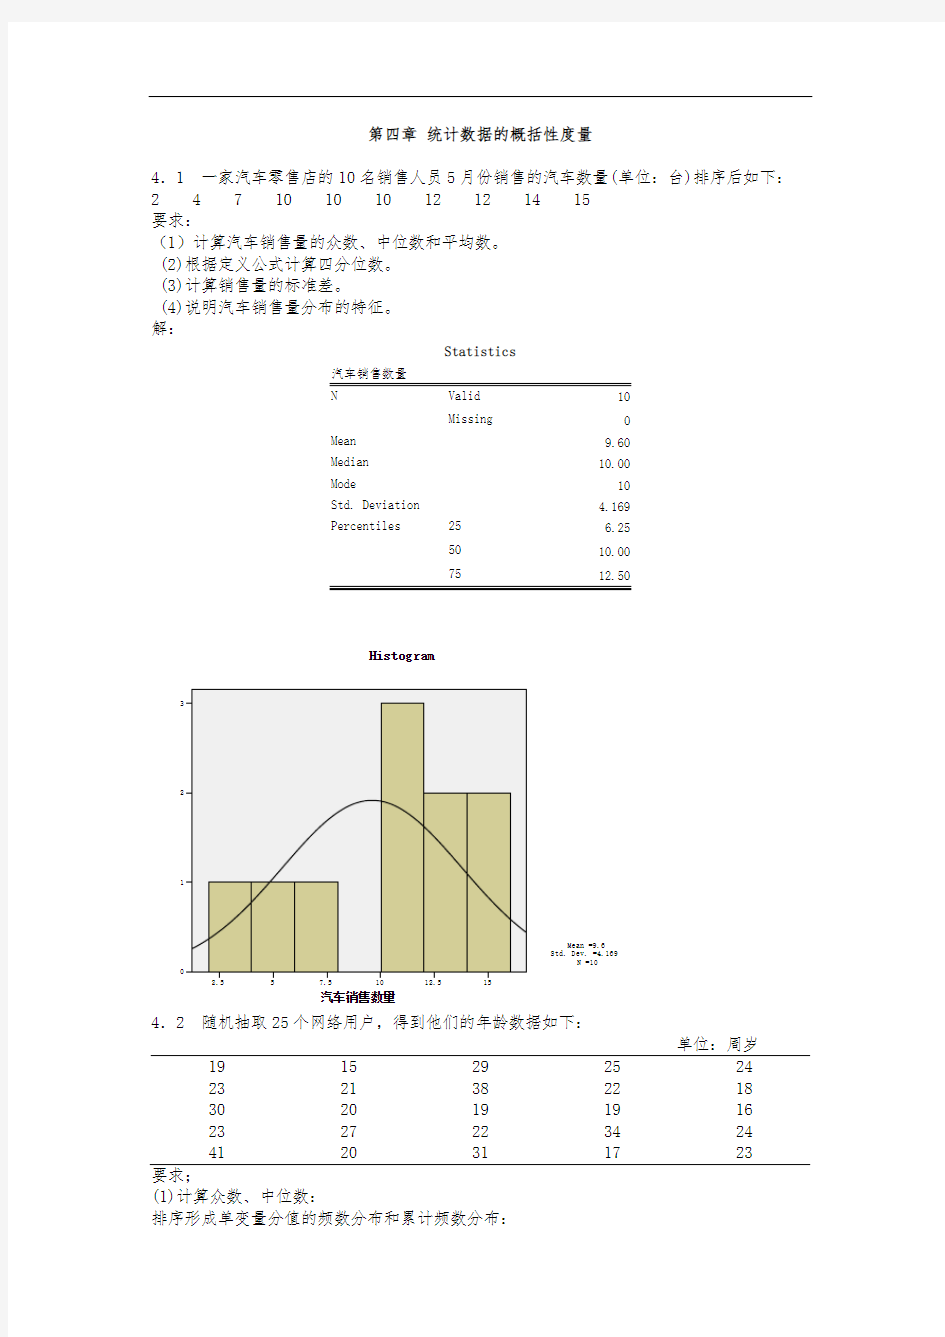 统计学第四章习题答案贾俊平